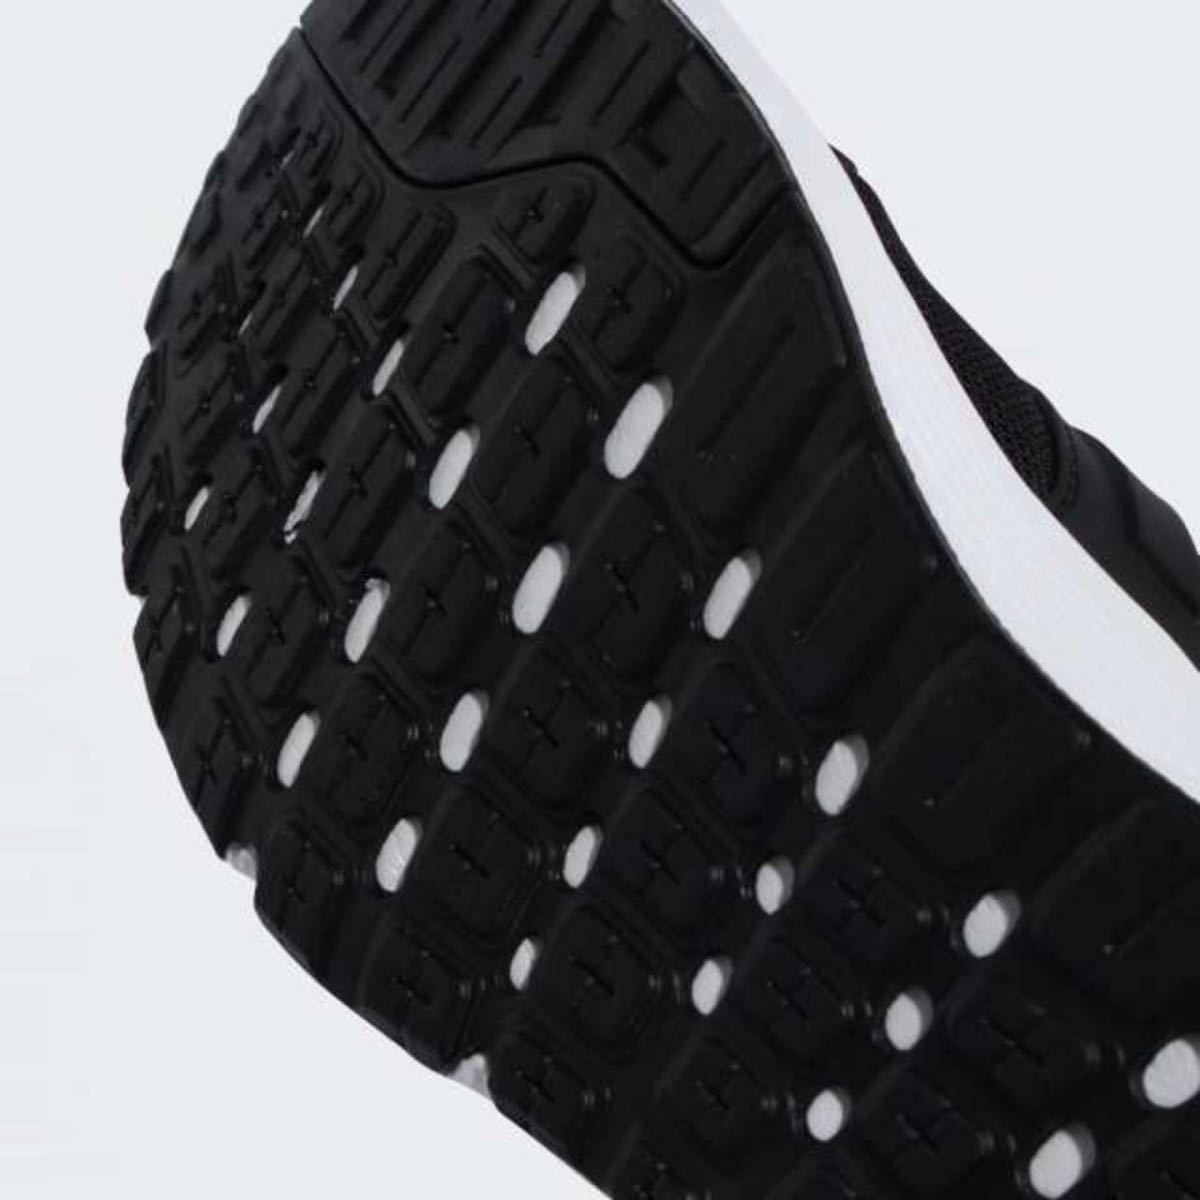 【新品未使用】26.0 黒 アディダス adidas GLX4 M メンズ ランニング シューズ スポーツシューズ 【即日発送】